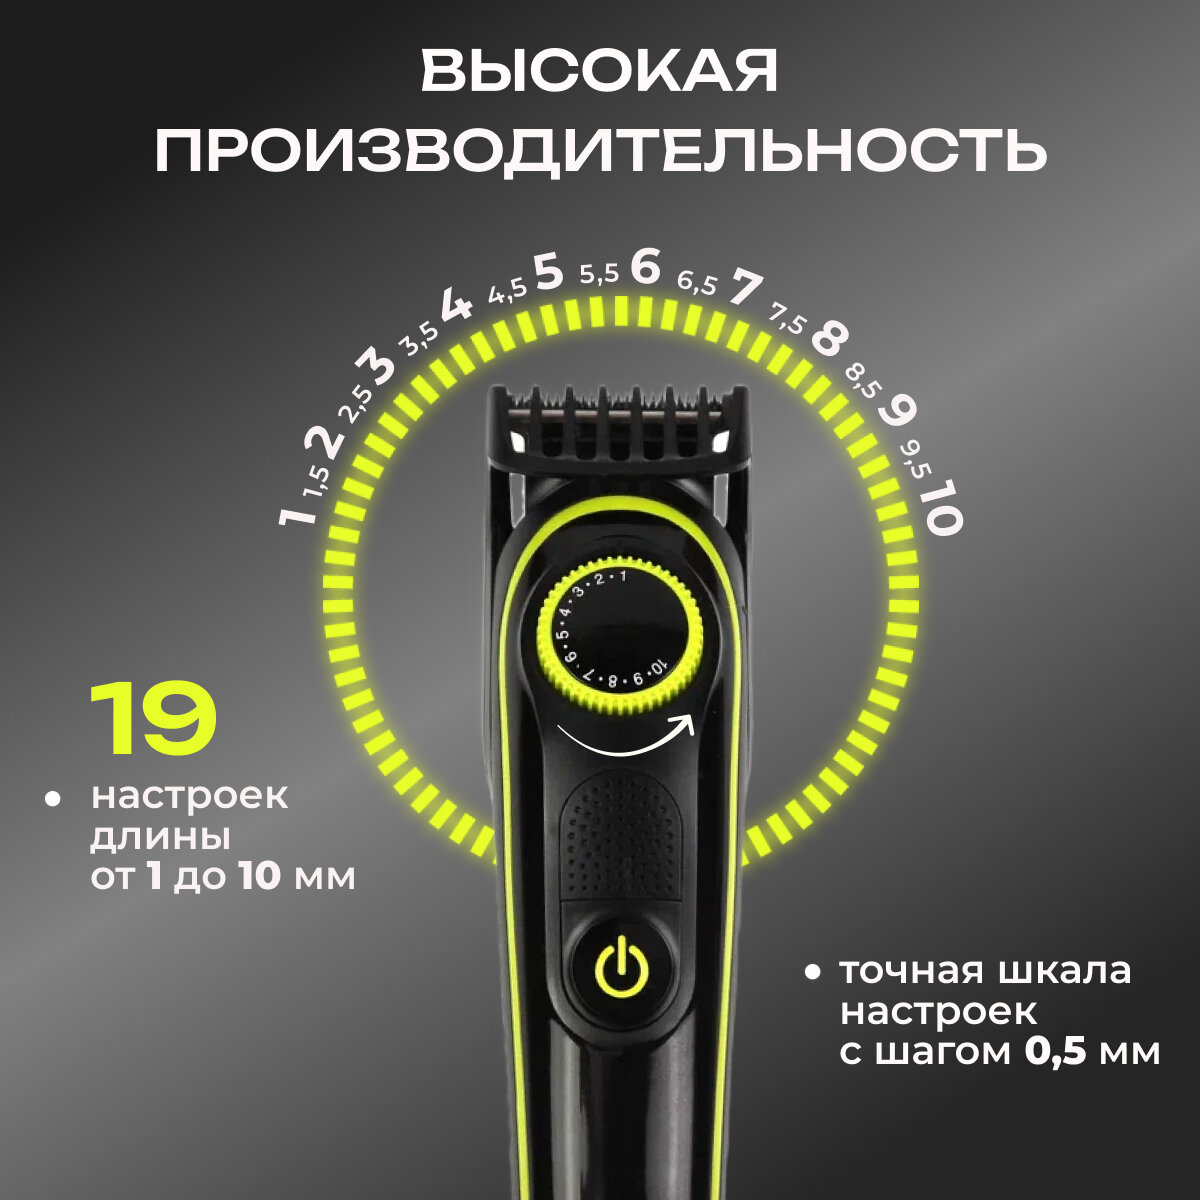 Триммер Kemei KM-696 беспроводной для Бороды, Волос, Усов, Носа и Тела 5 в 1 с индикаторной панелью